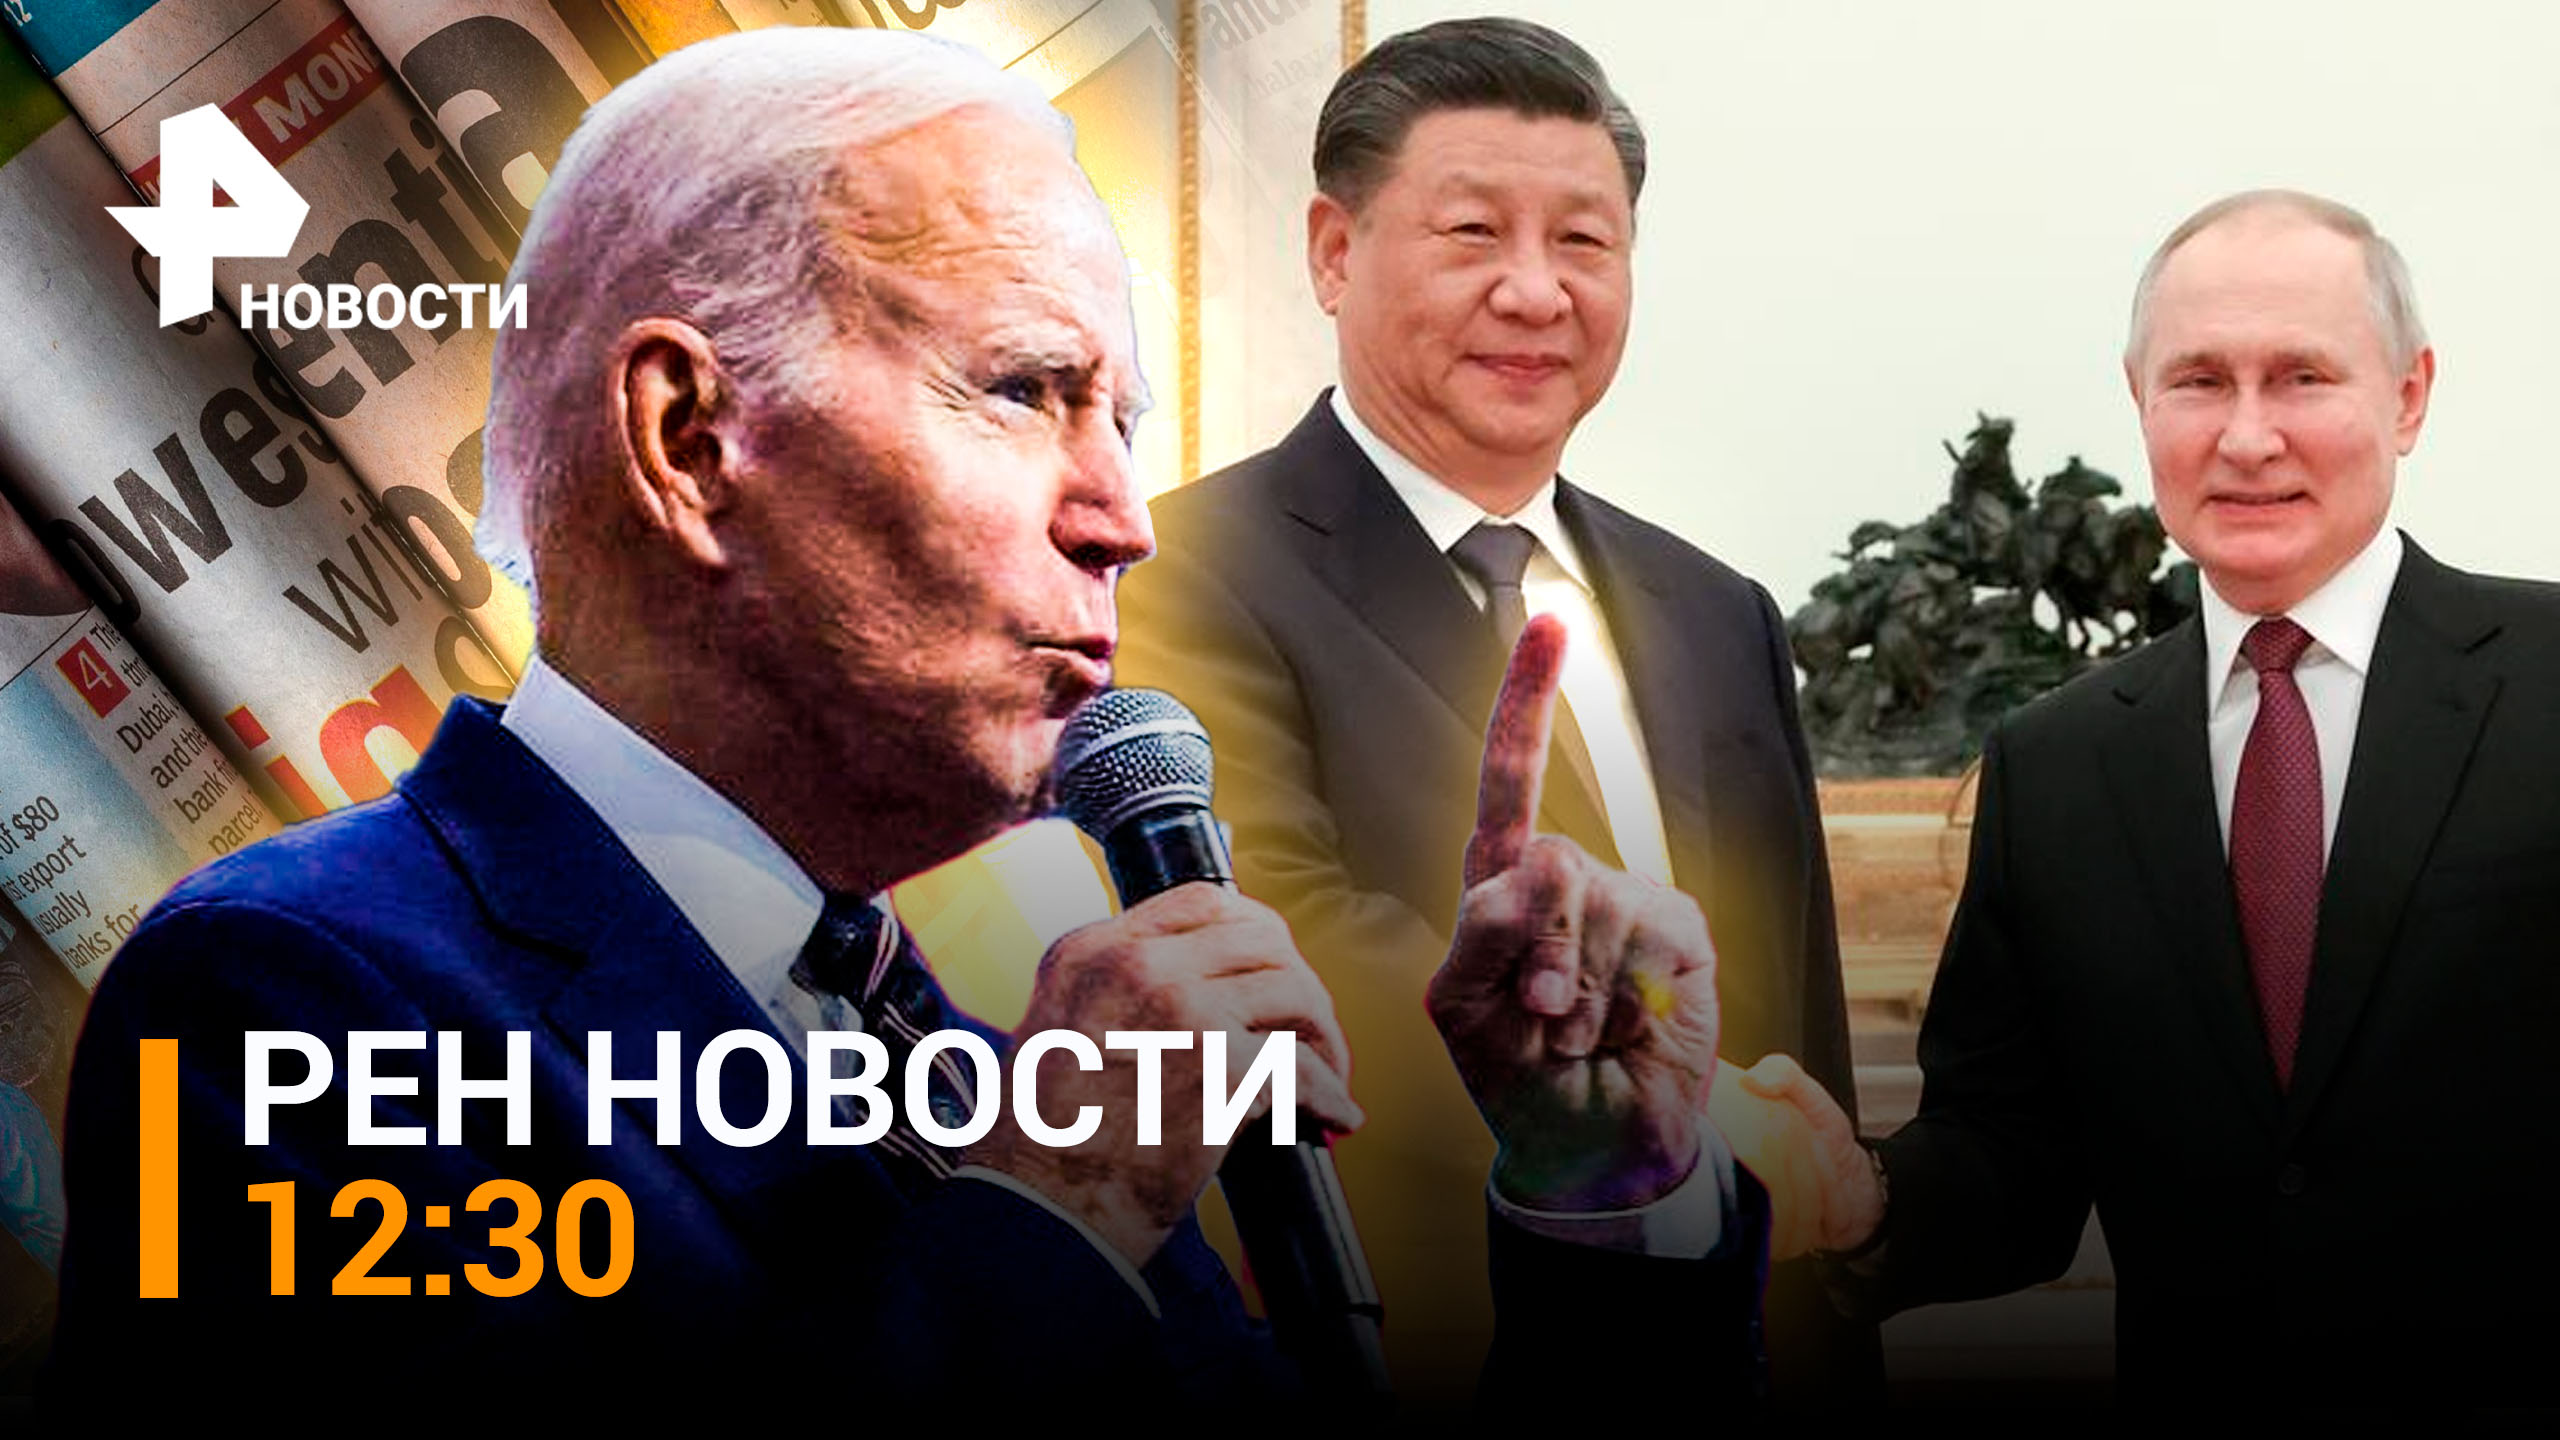 Второй день визита Си Цзиньпина в РФ: планы лидера КНР - мировые СМИ трясет  / РЕН НОВОСТИ 12:30